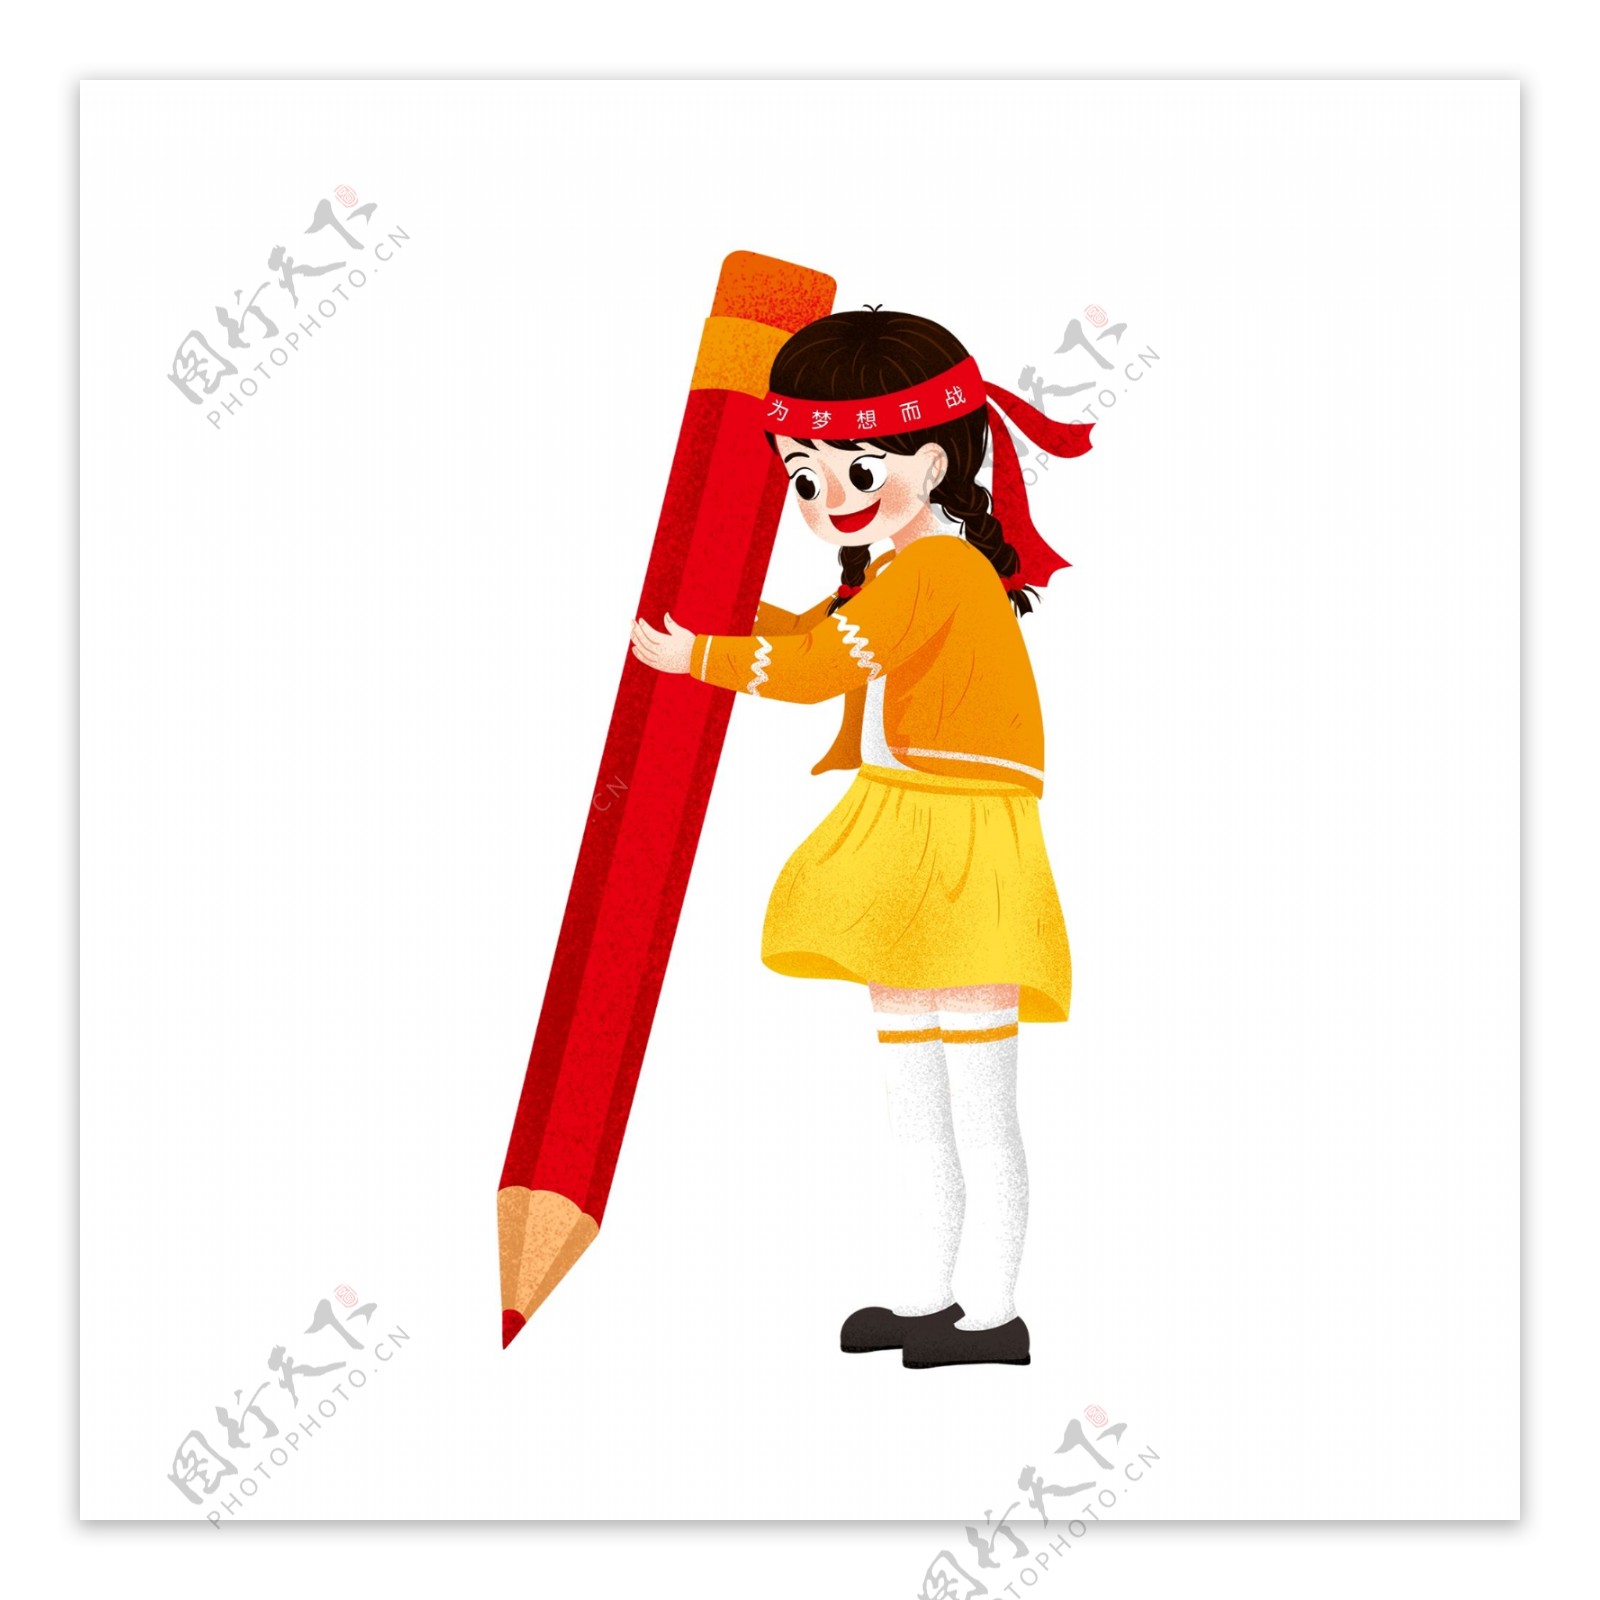 抱着铅笔的女孩图案